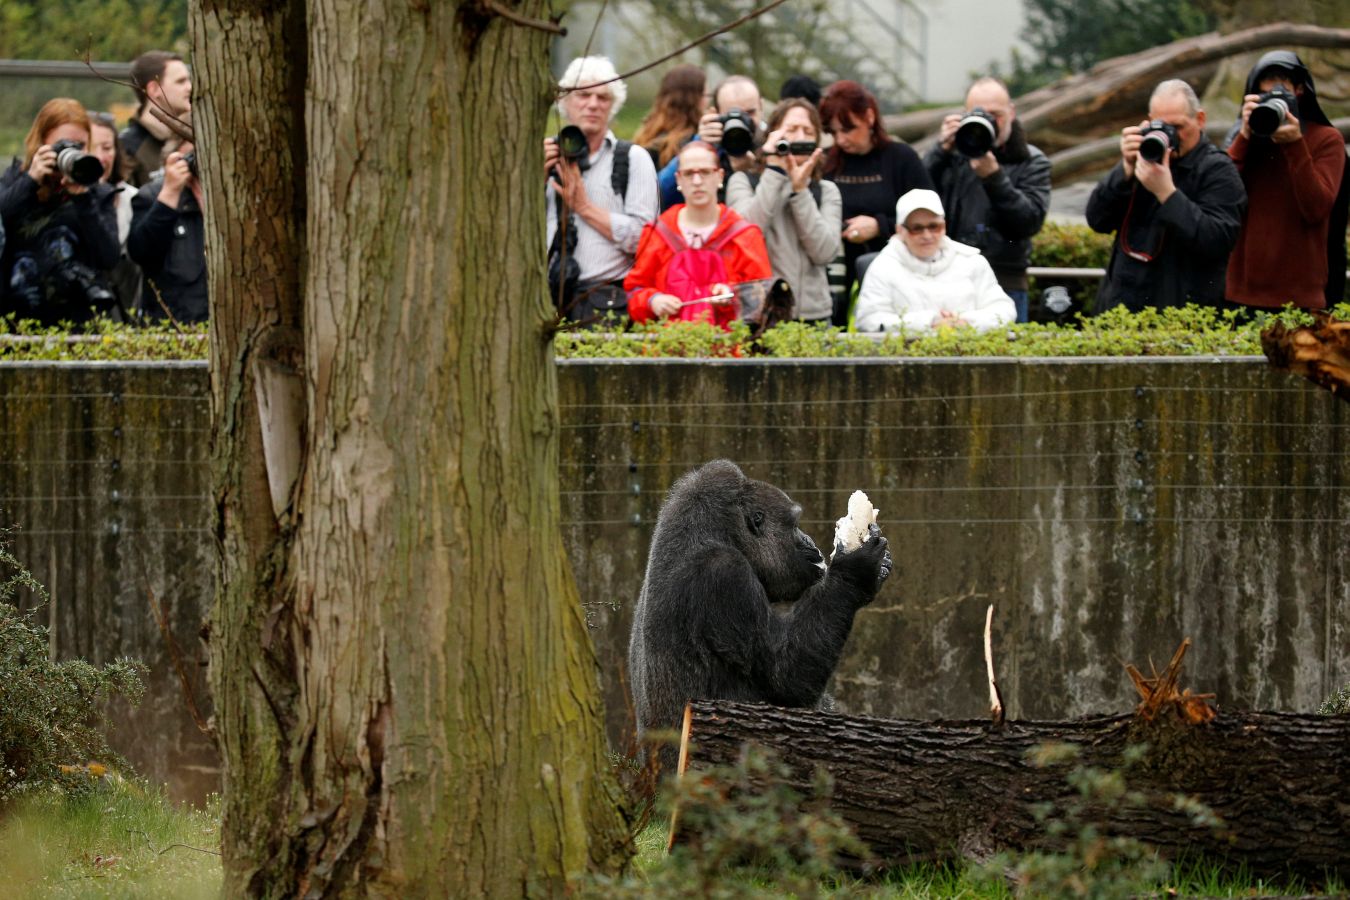 Es el gorila más longevo de Europa y, por eso, en el zoo de Berlín han celebrado su cumpleaños por todo lo alto. Incluso con tarta. No es para menos, Fatou cumple unos golosos 61.